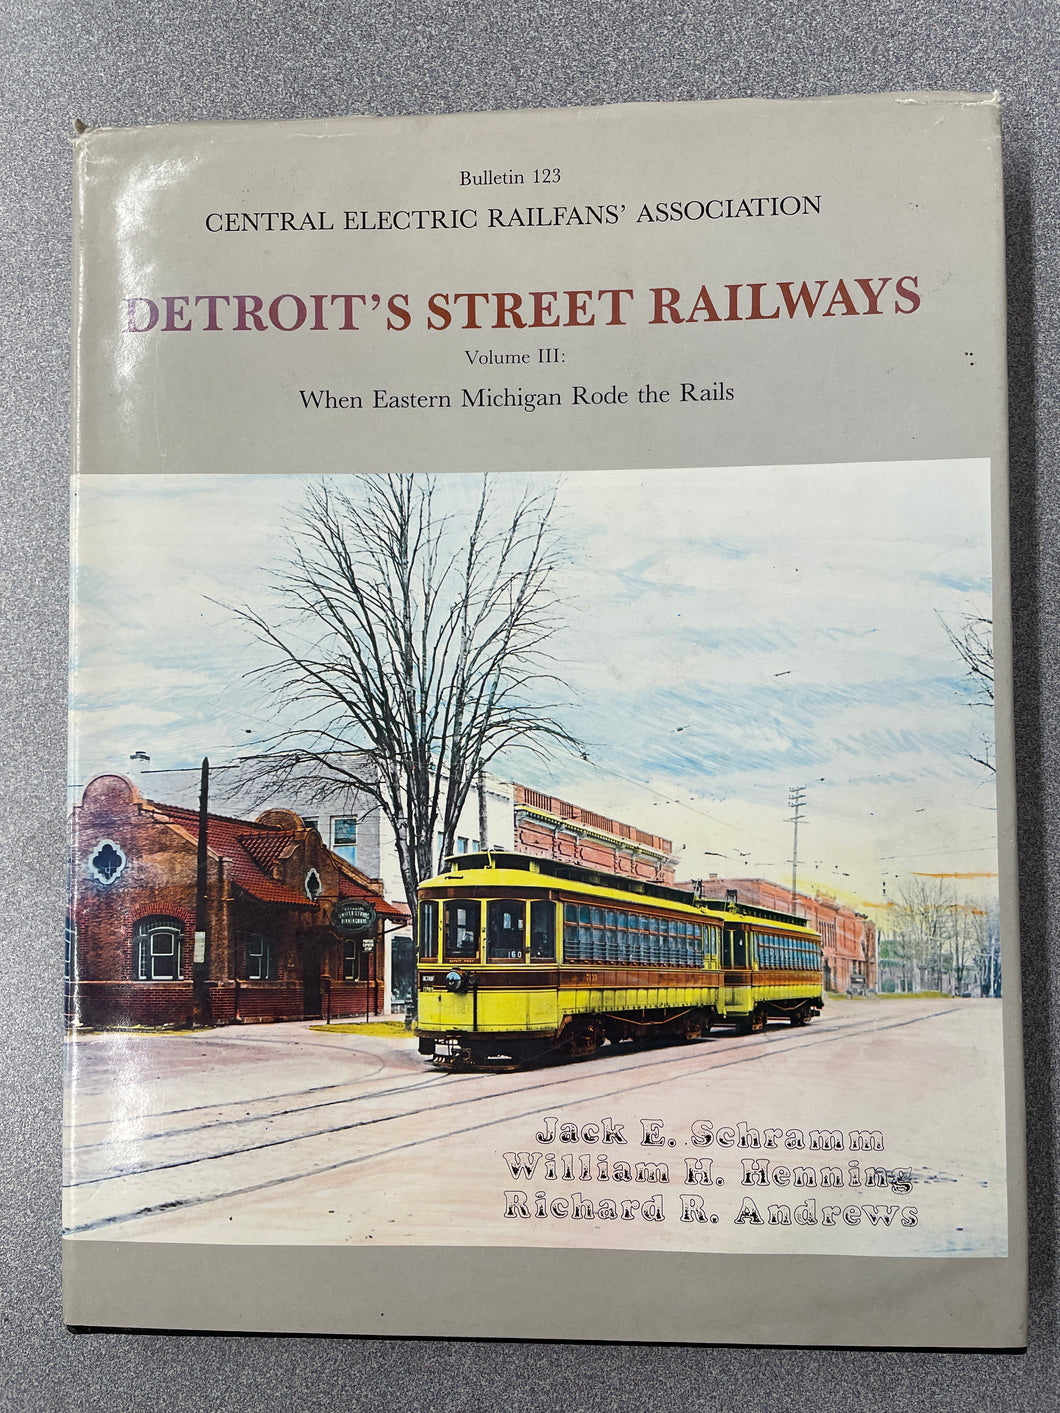 H Detroit's Street Railways, Volume III: When Eastern Michigan Rode the Rails, Schramm, Jack E., et al [1984] N 12/23